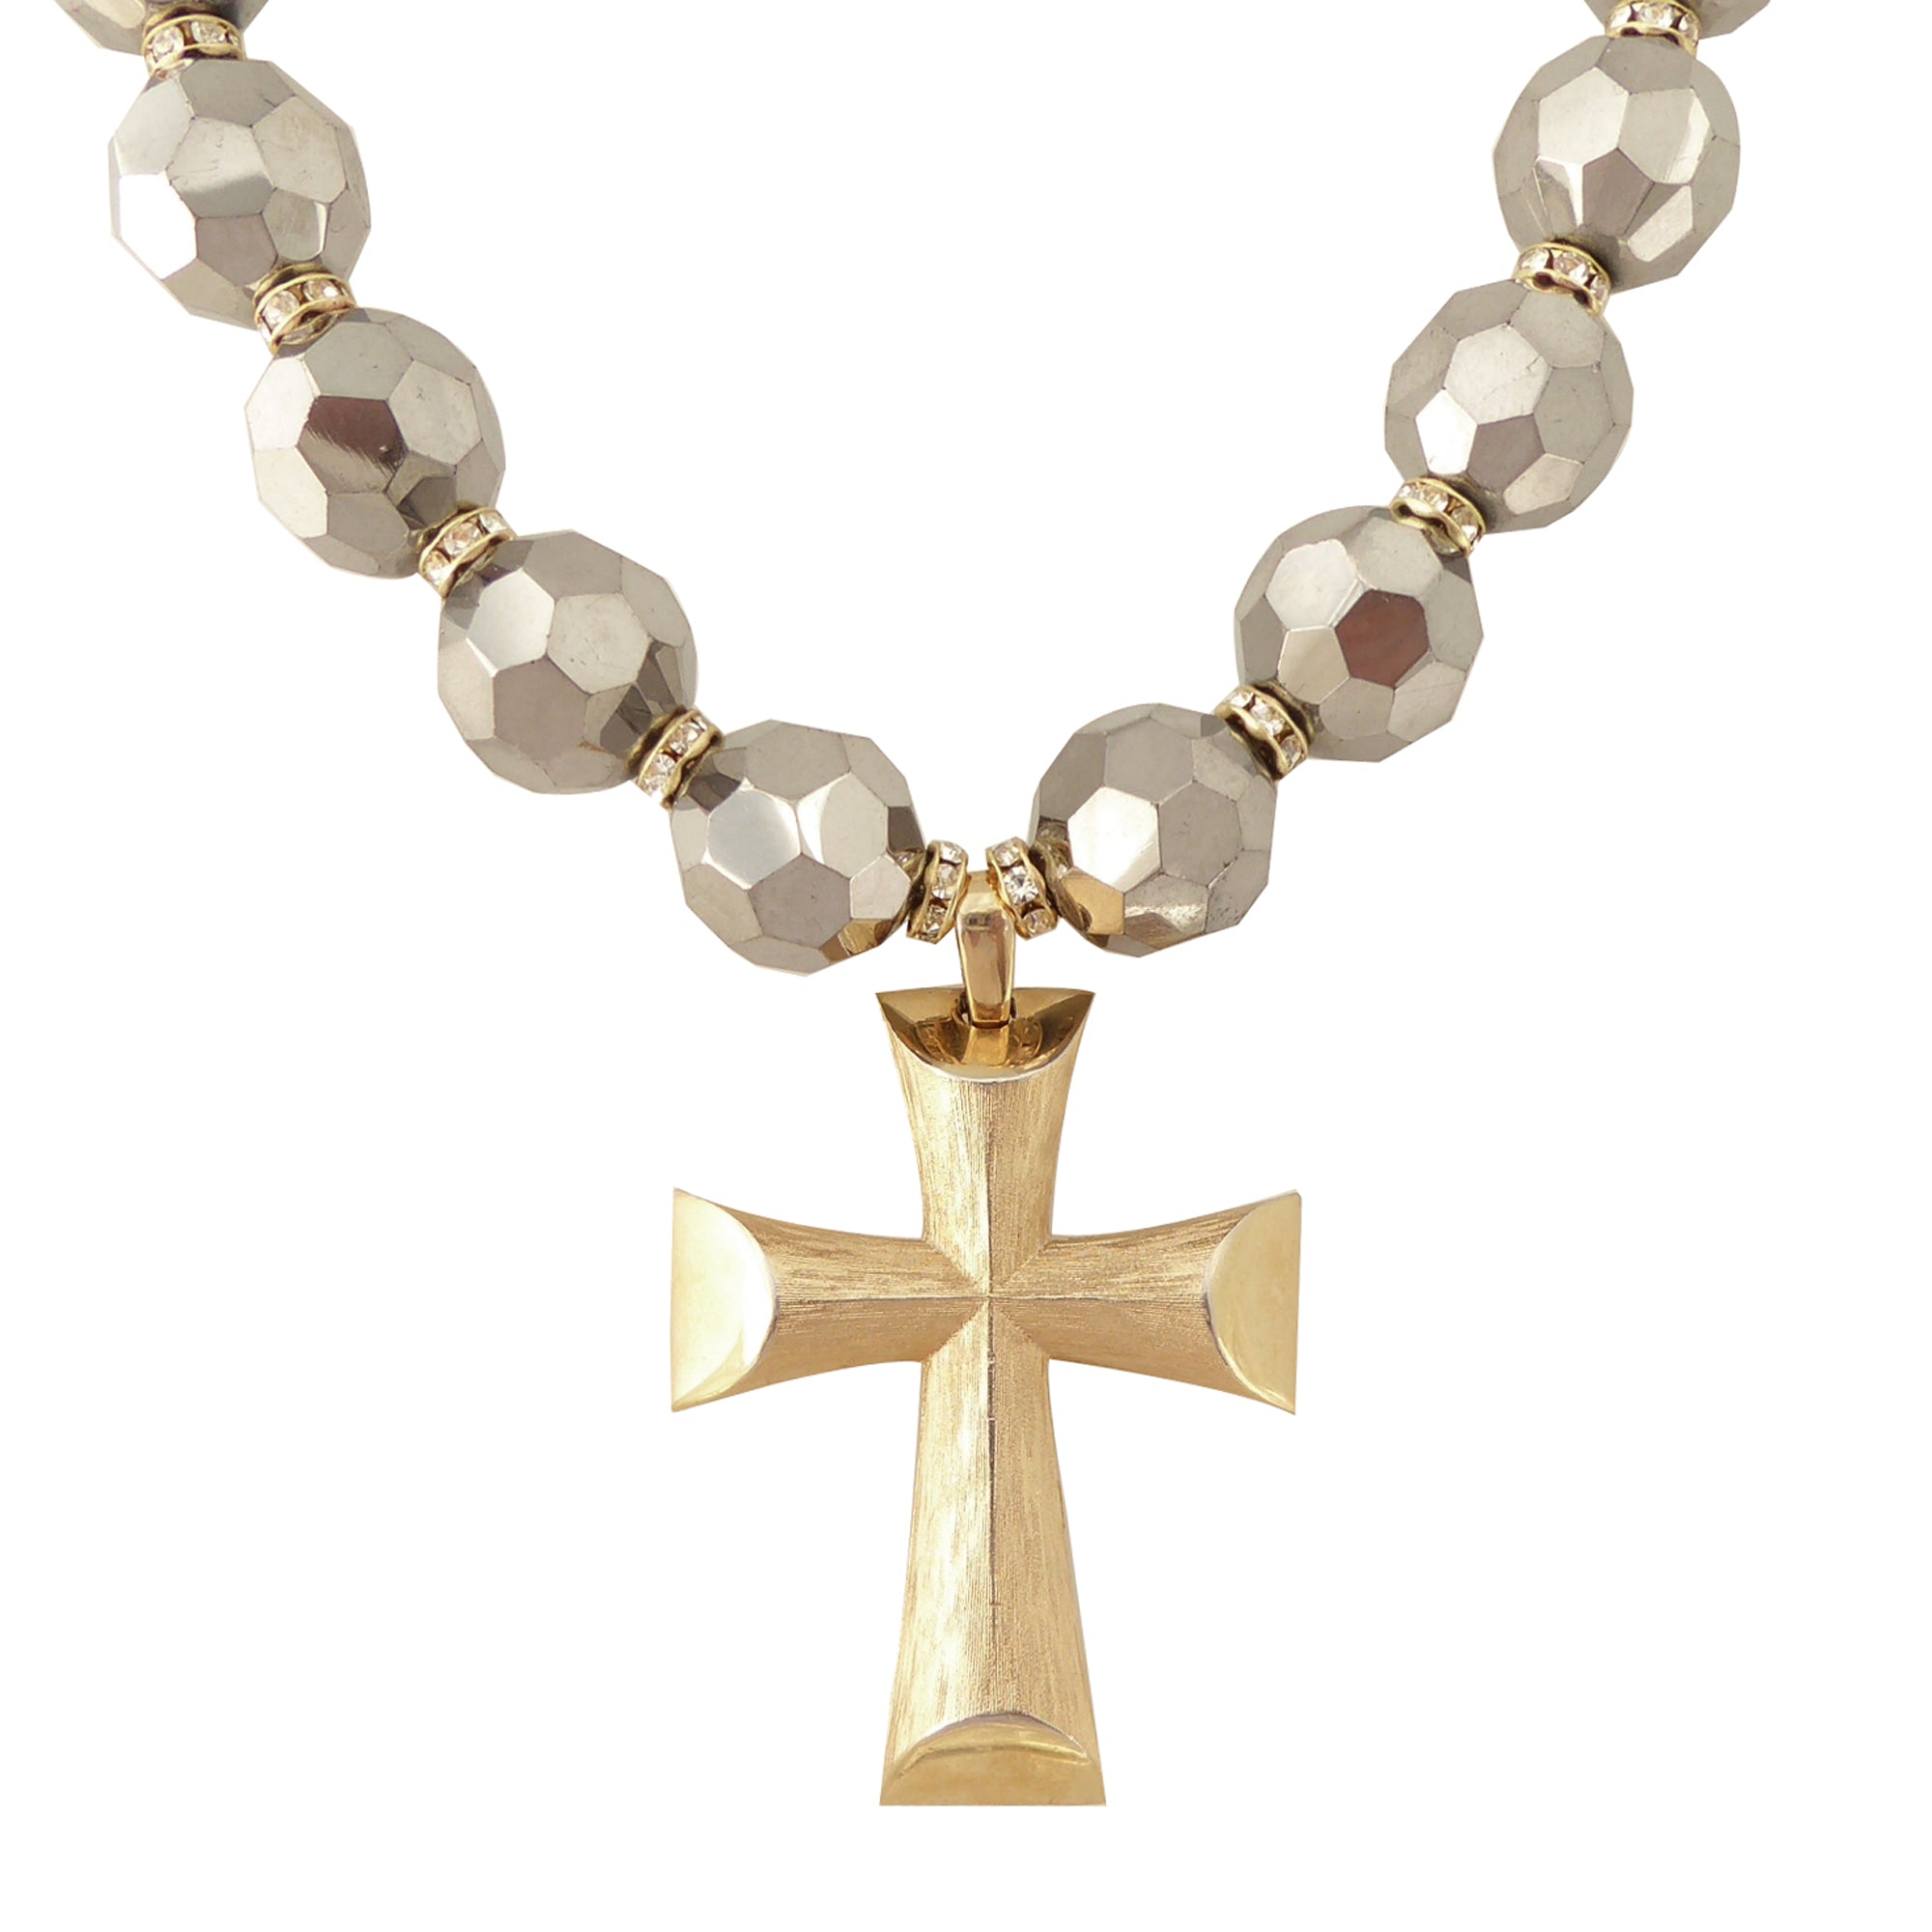    Vintage gold cross necklace by Jenny Dayco 1